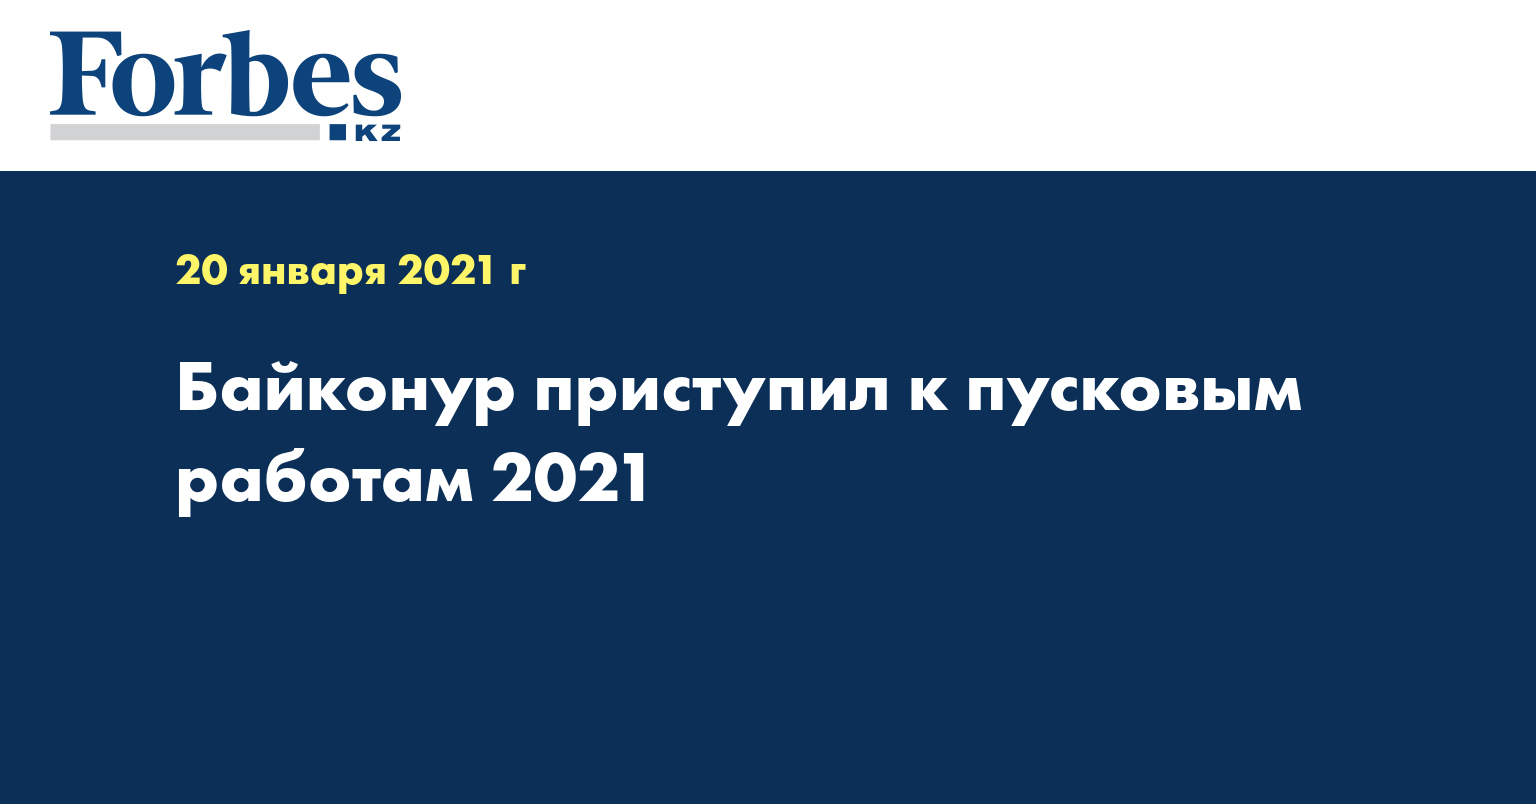 Байконур приступил к пусковым работам 2021